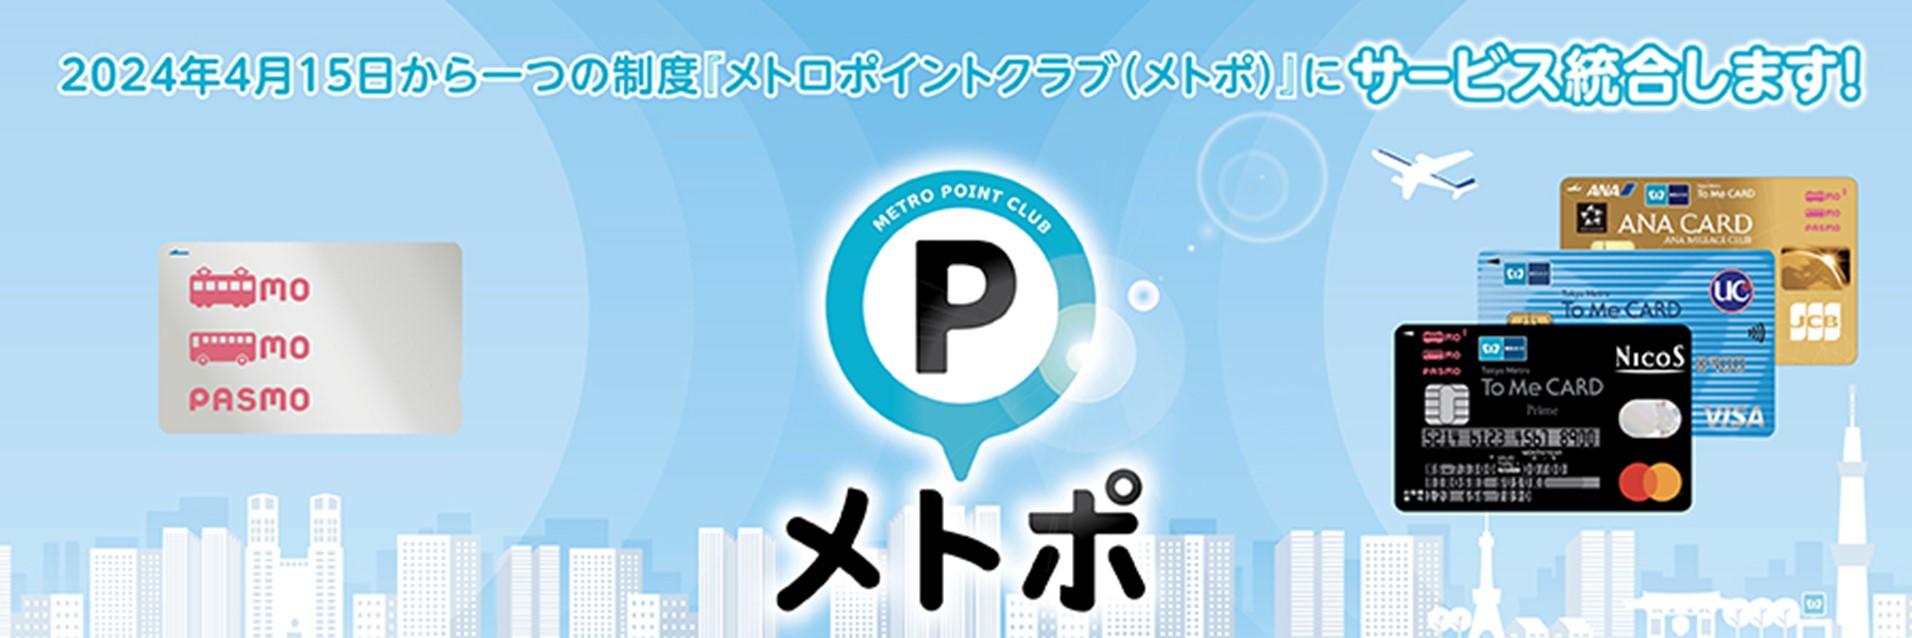 東京メトロ：To Me CARD会員のお客様を対象に「ポイントサービス統合記念キャンペーン」を実施!